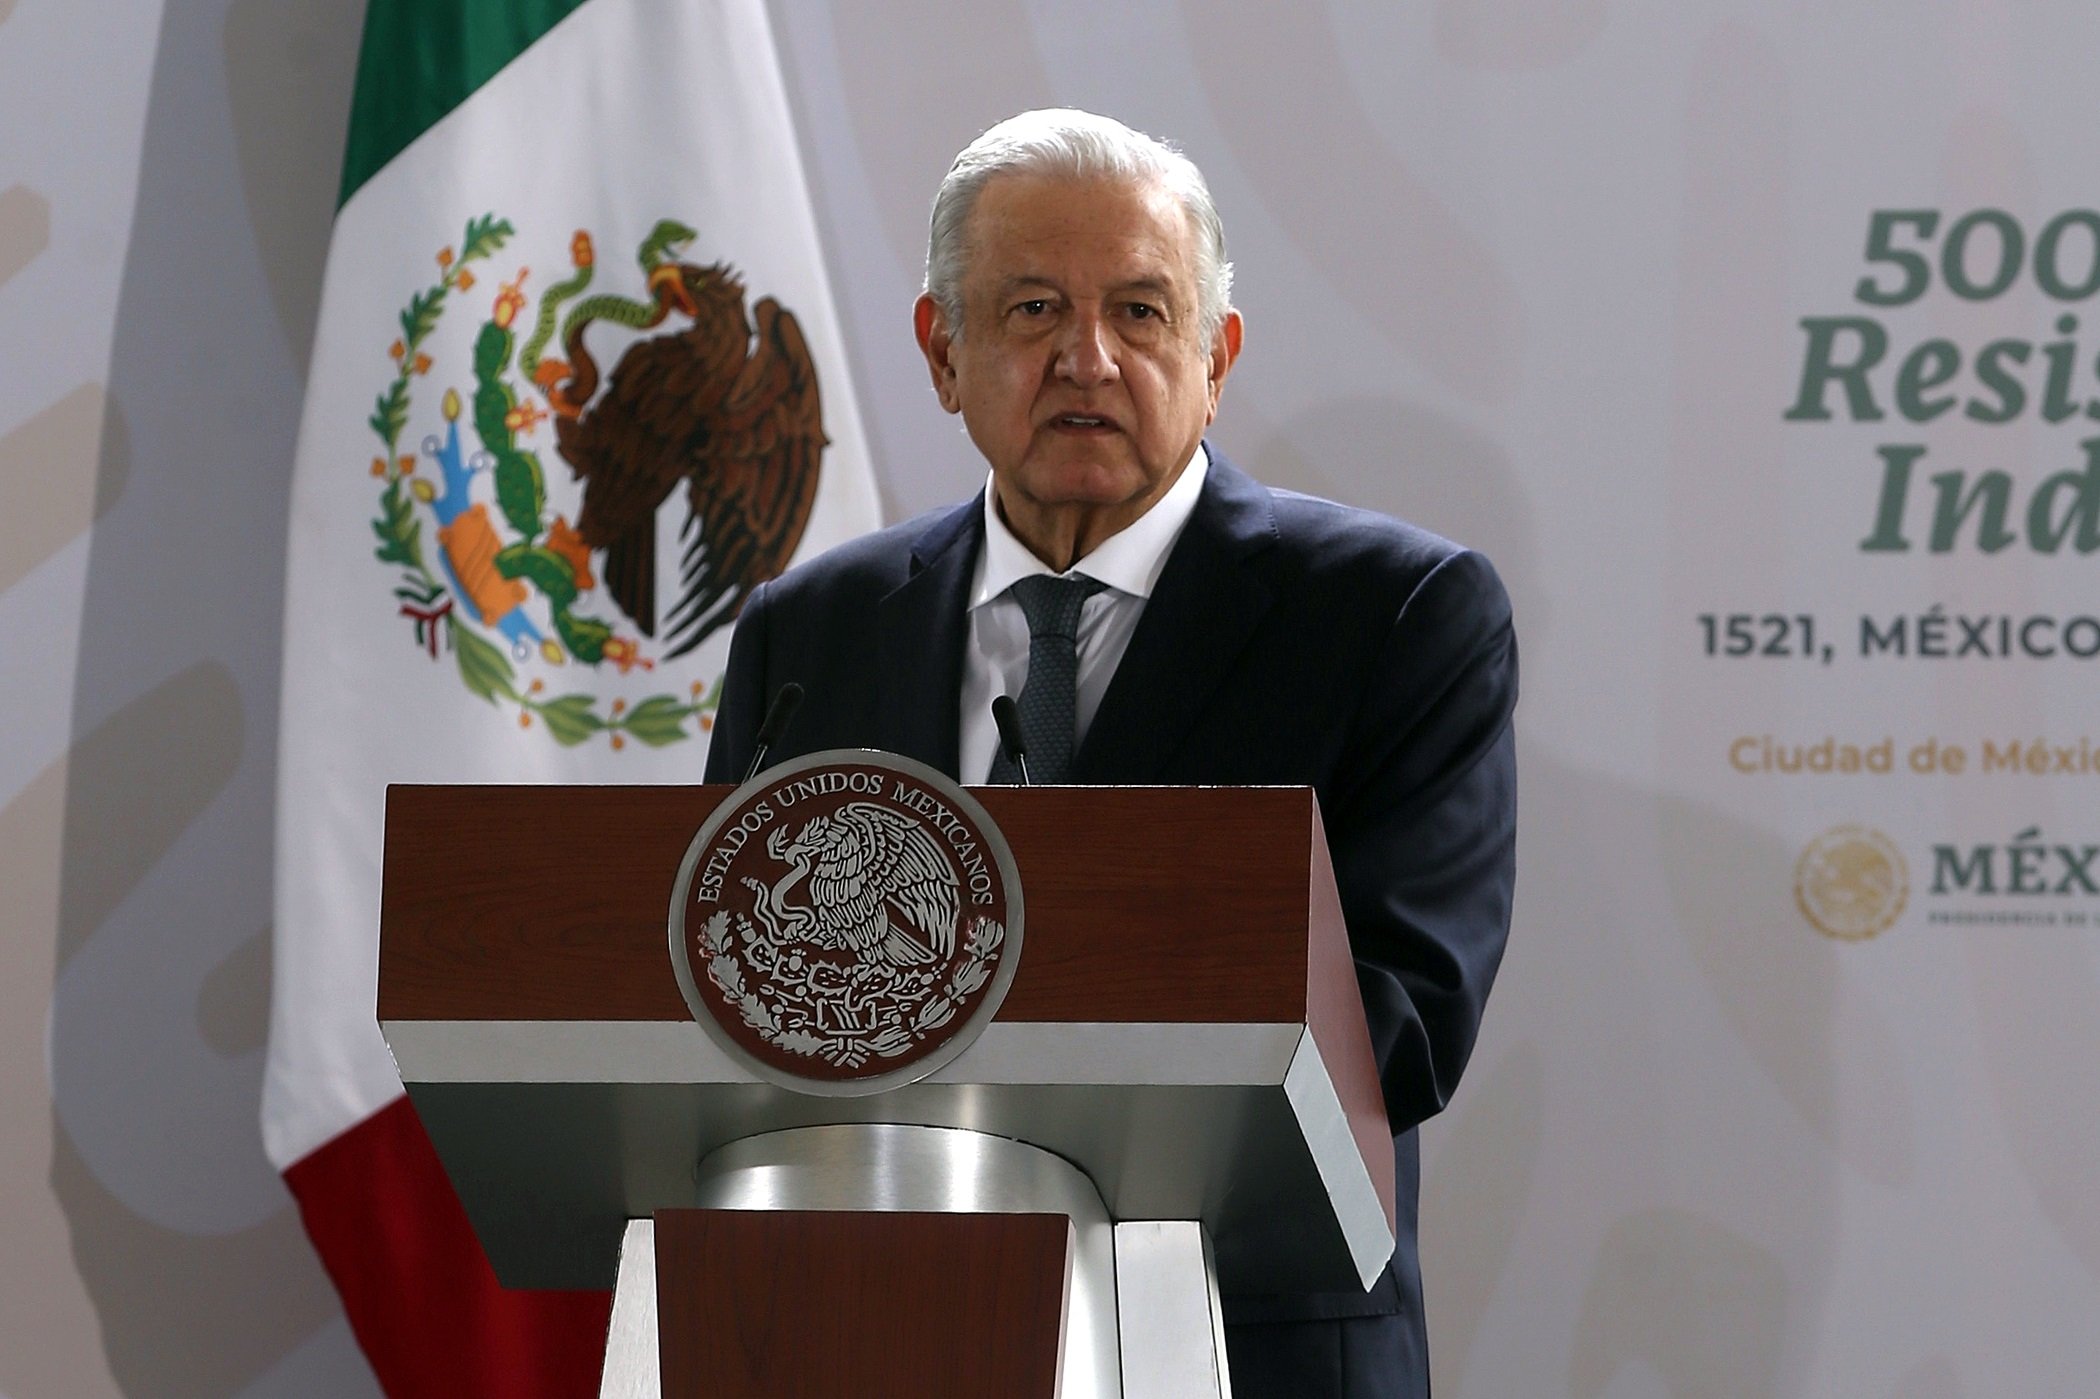 Obrador proposa "fer una pausa" en les relacions amb Espanya: "Que demanin perdó"